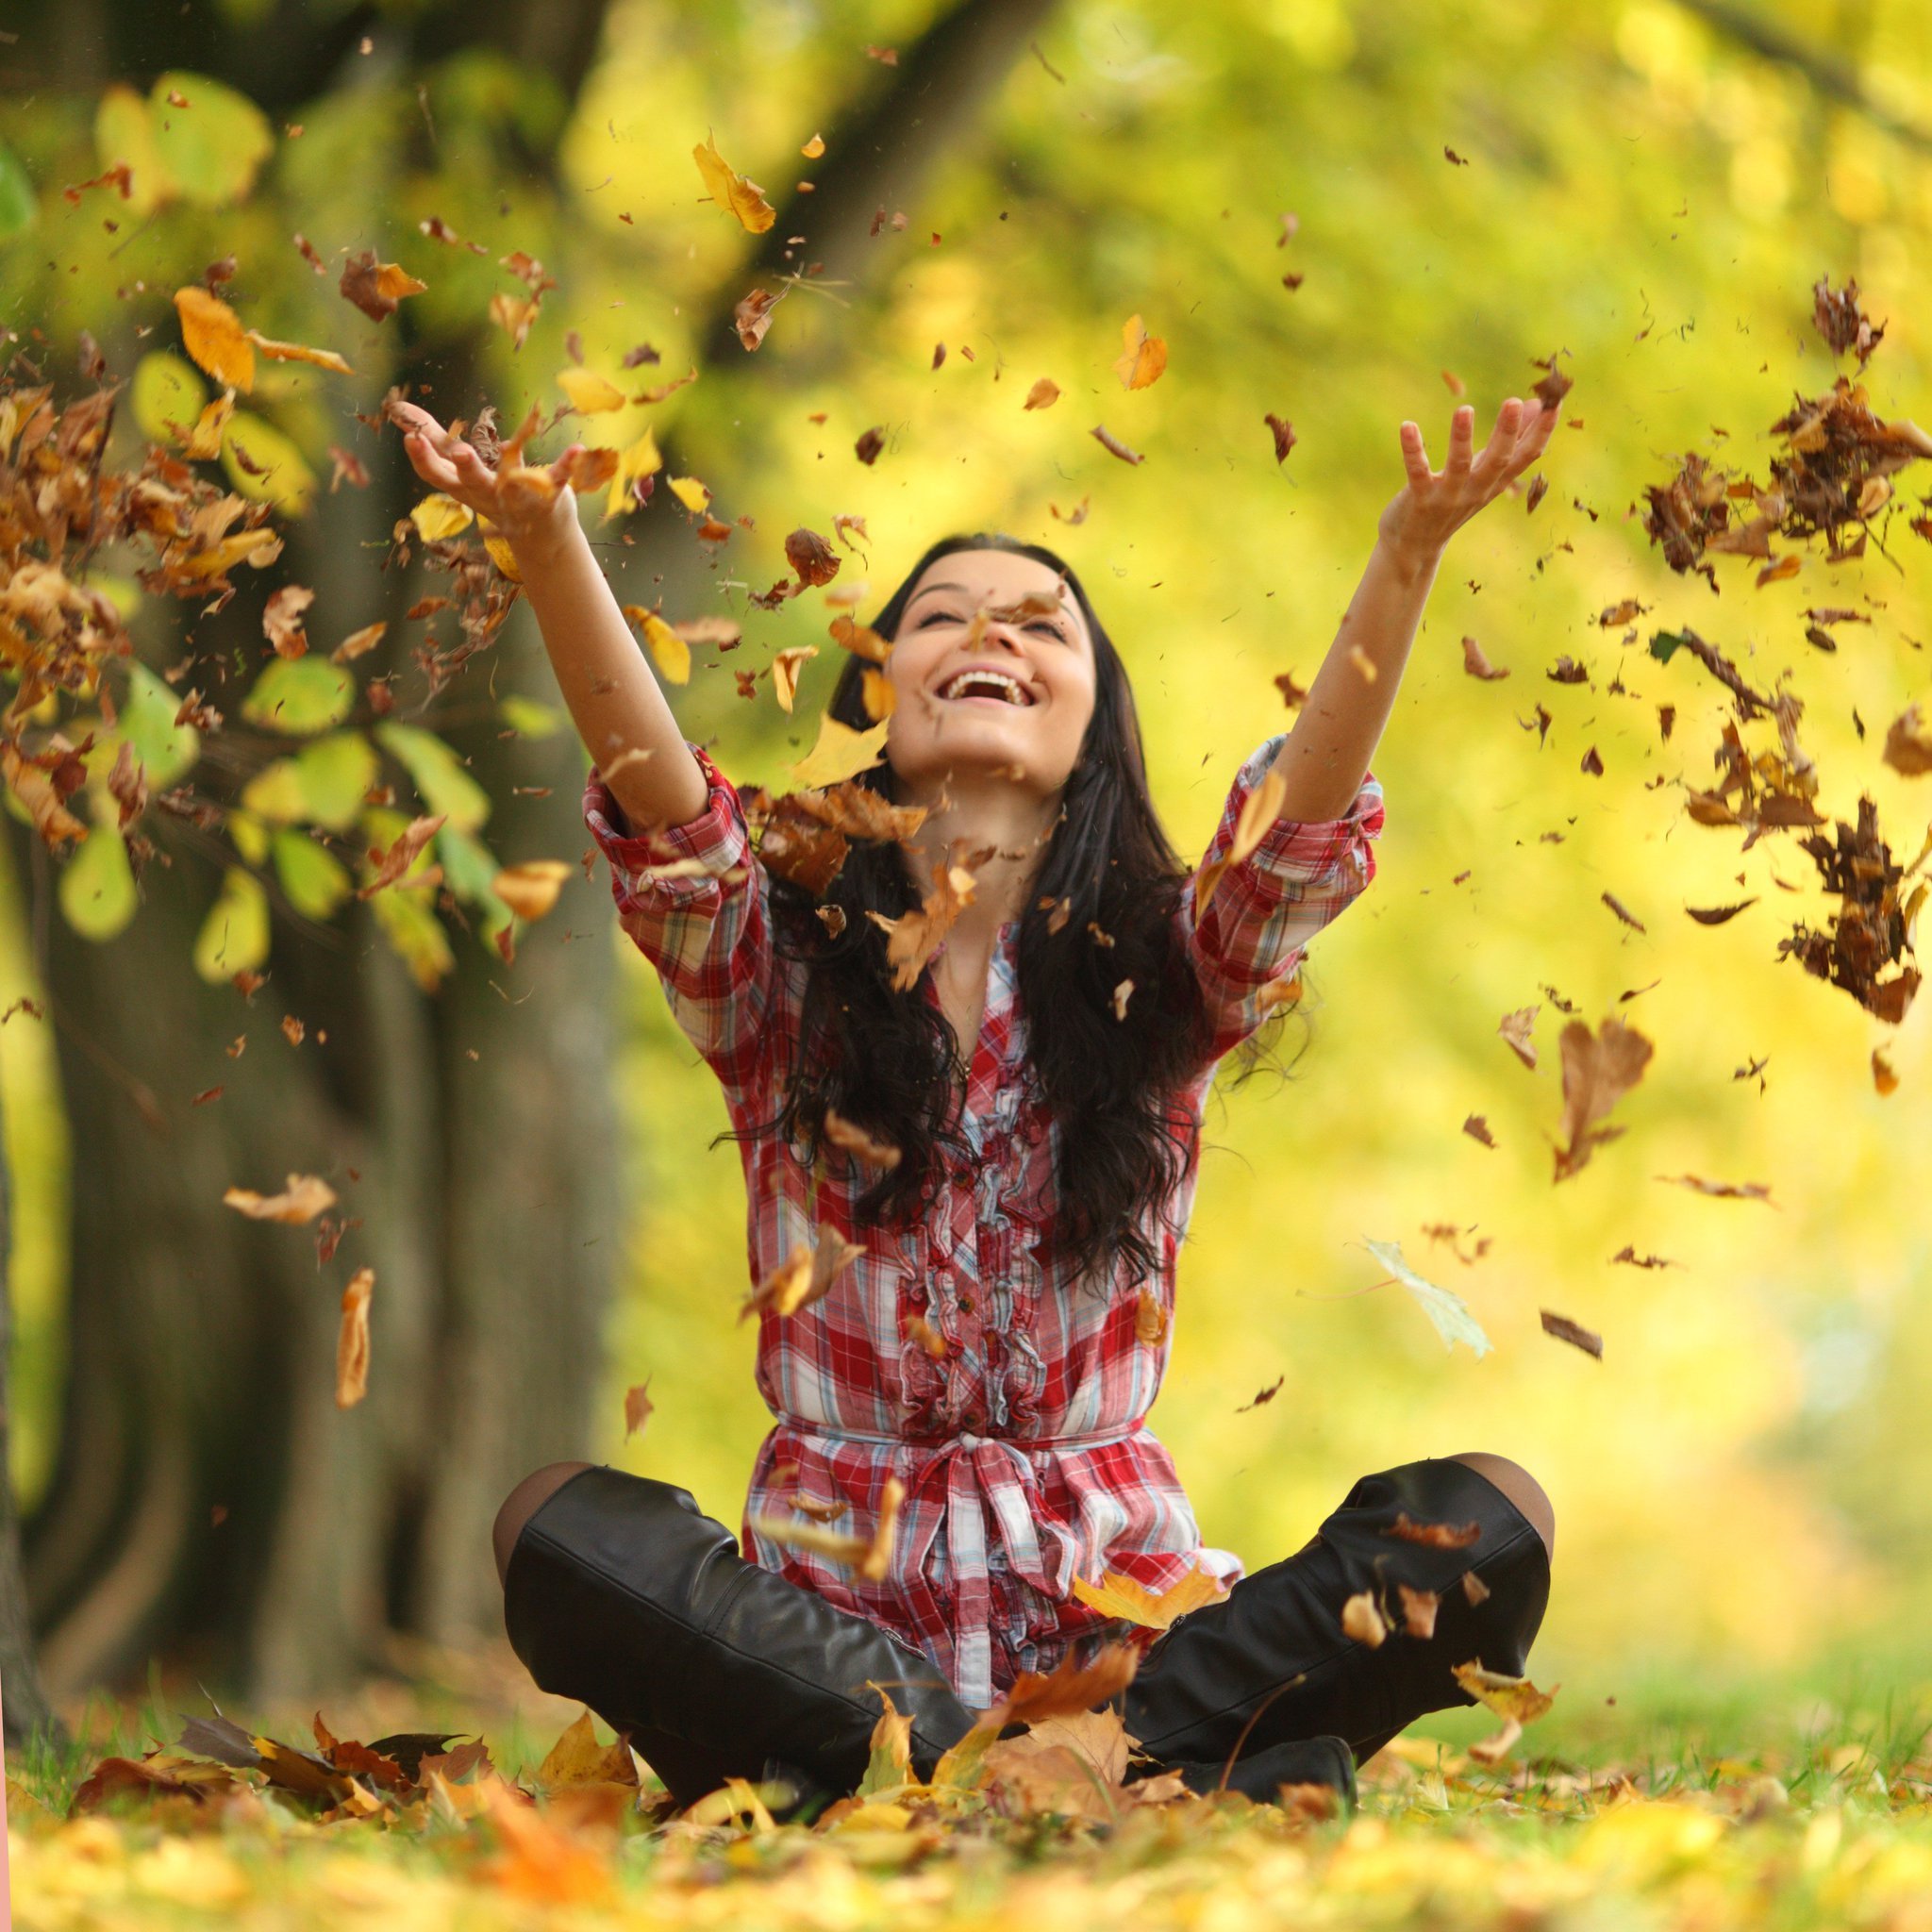 Жить и наслаждаться песня. Осень радость. Девушка радуется. Осень люди. Осень счастье.